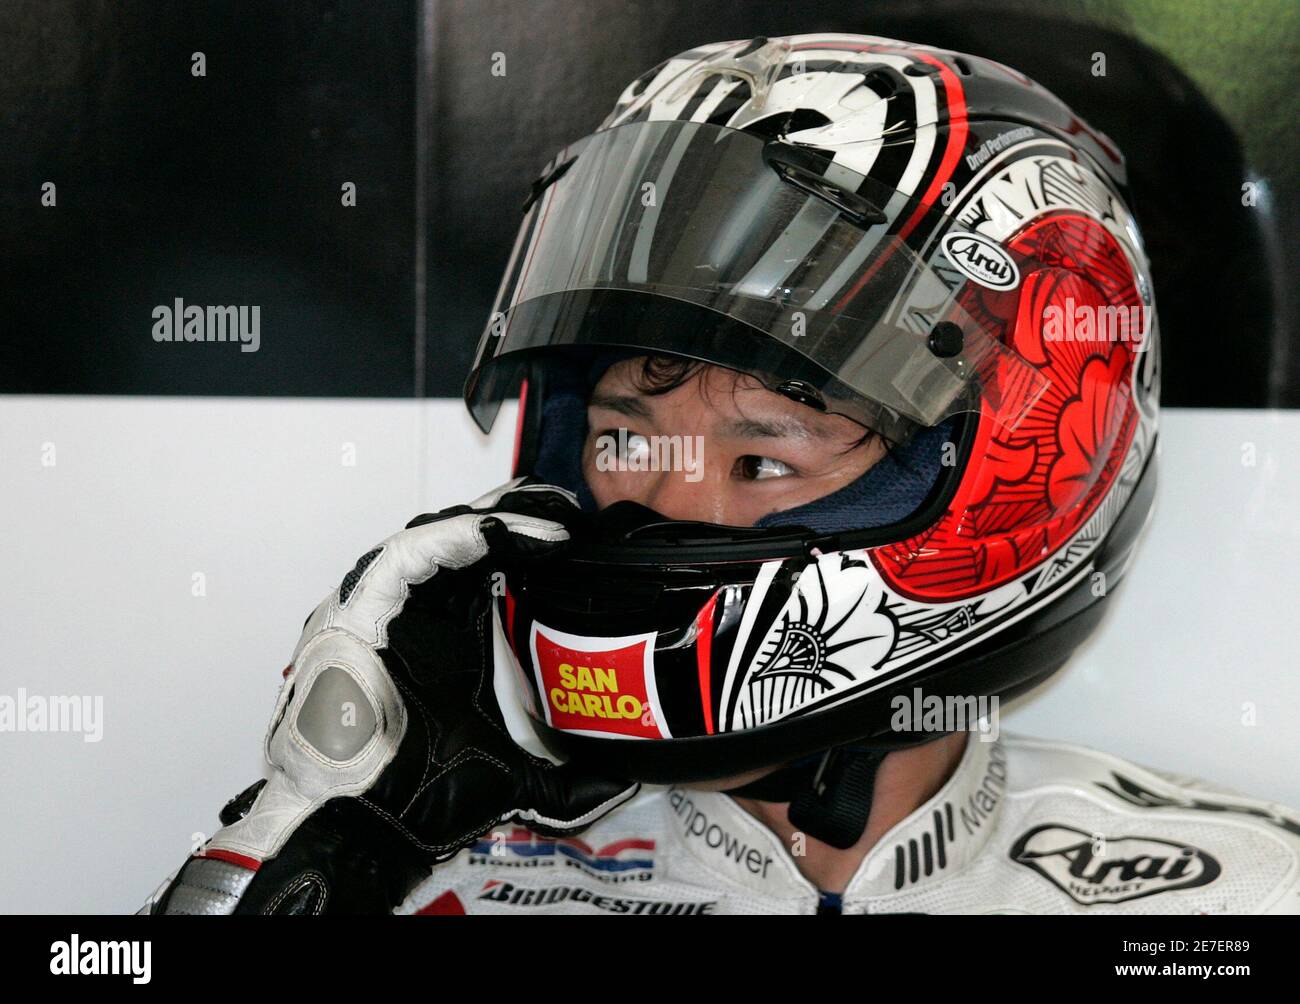 Le pilote Yamahai MotoGP Shinya Nakano, du Japon, ajuste son casque lors de  la deuxième journée de pratique du Grand Prix de Chine au circuit  international de Shanghai le 3 mai 2008.